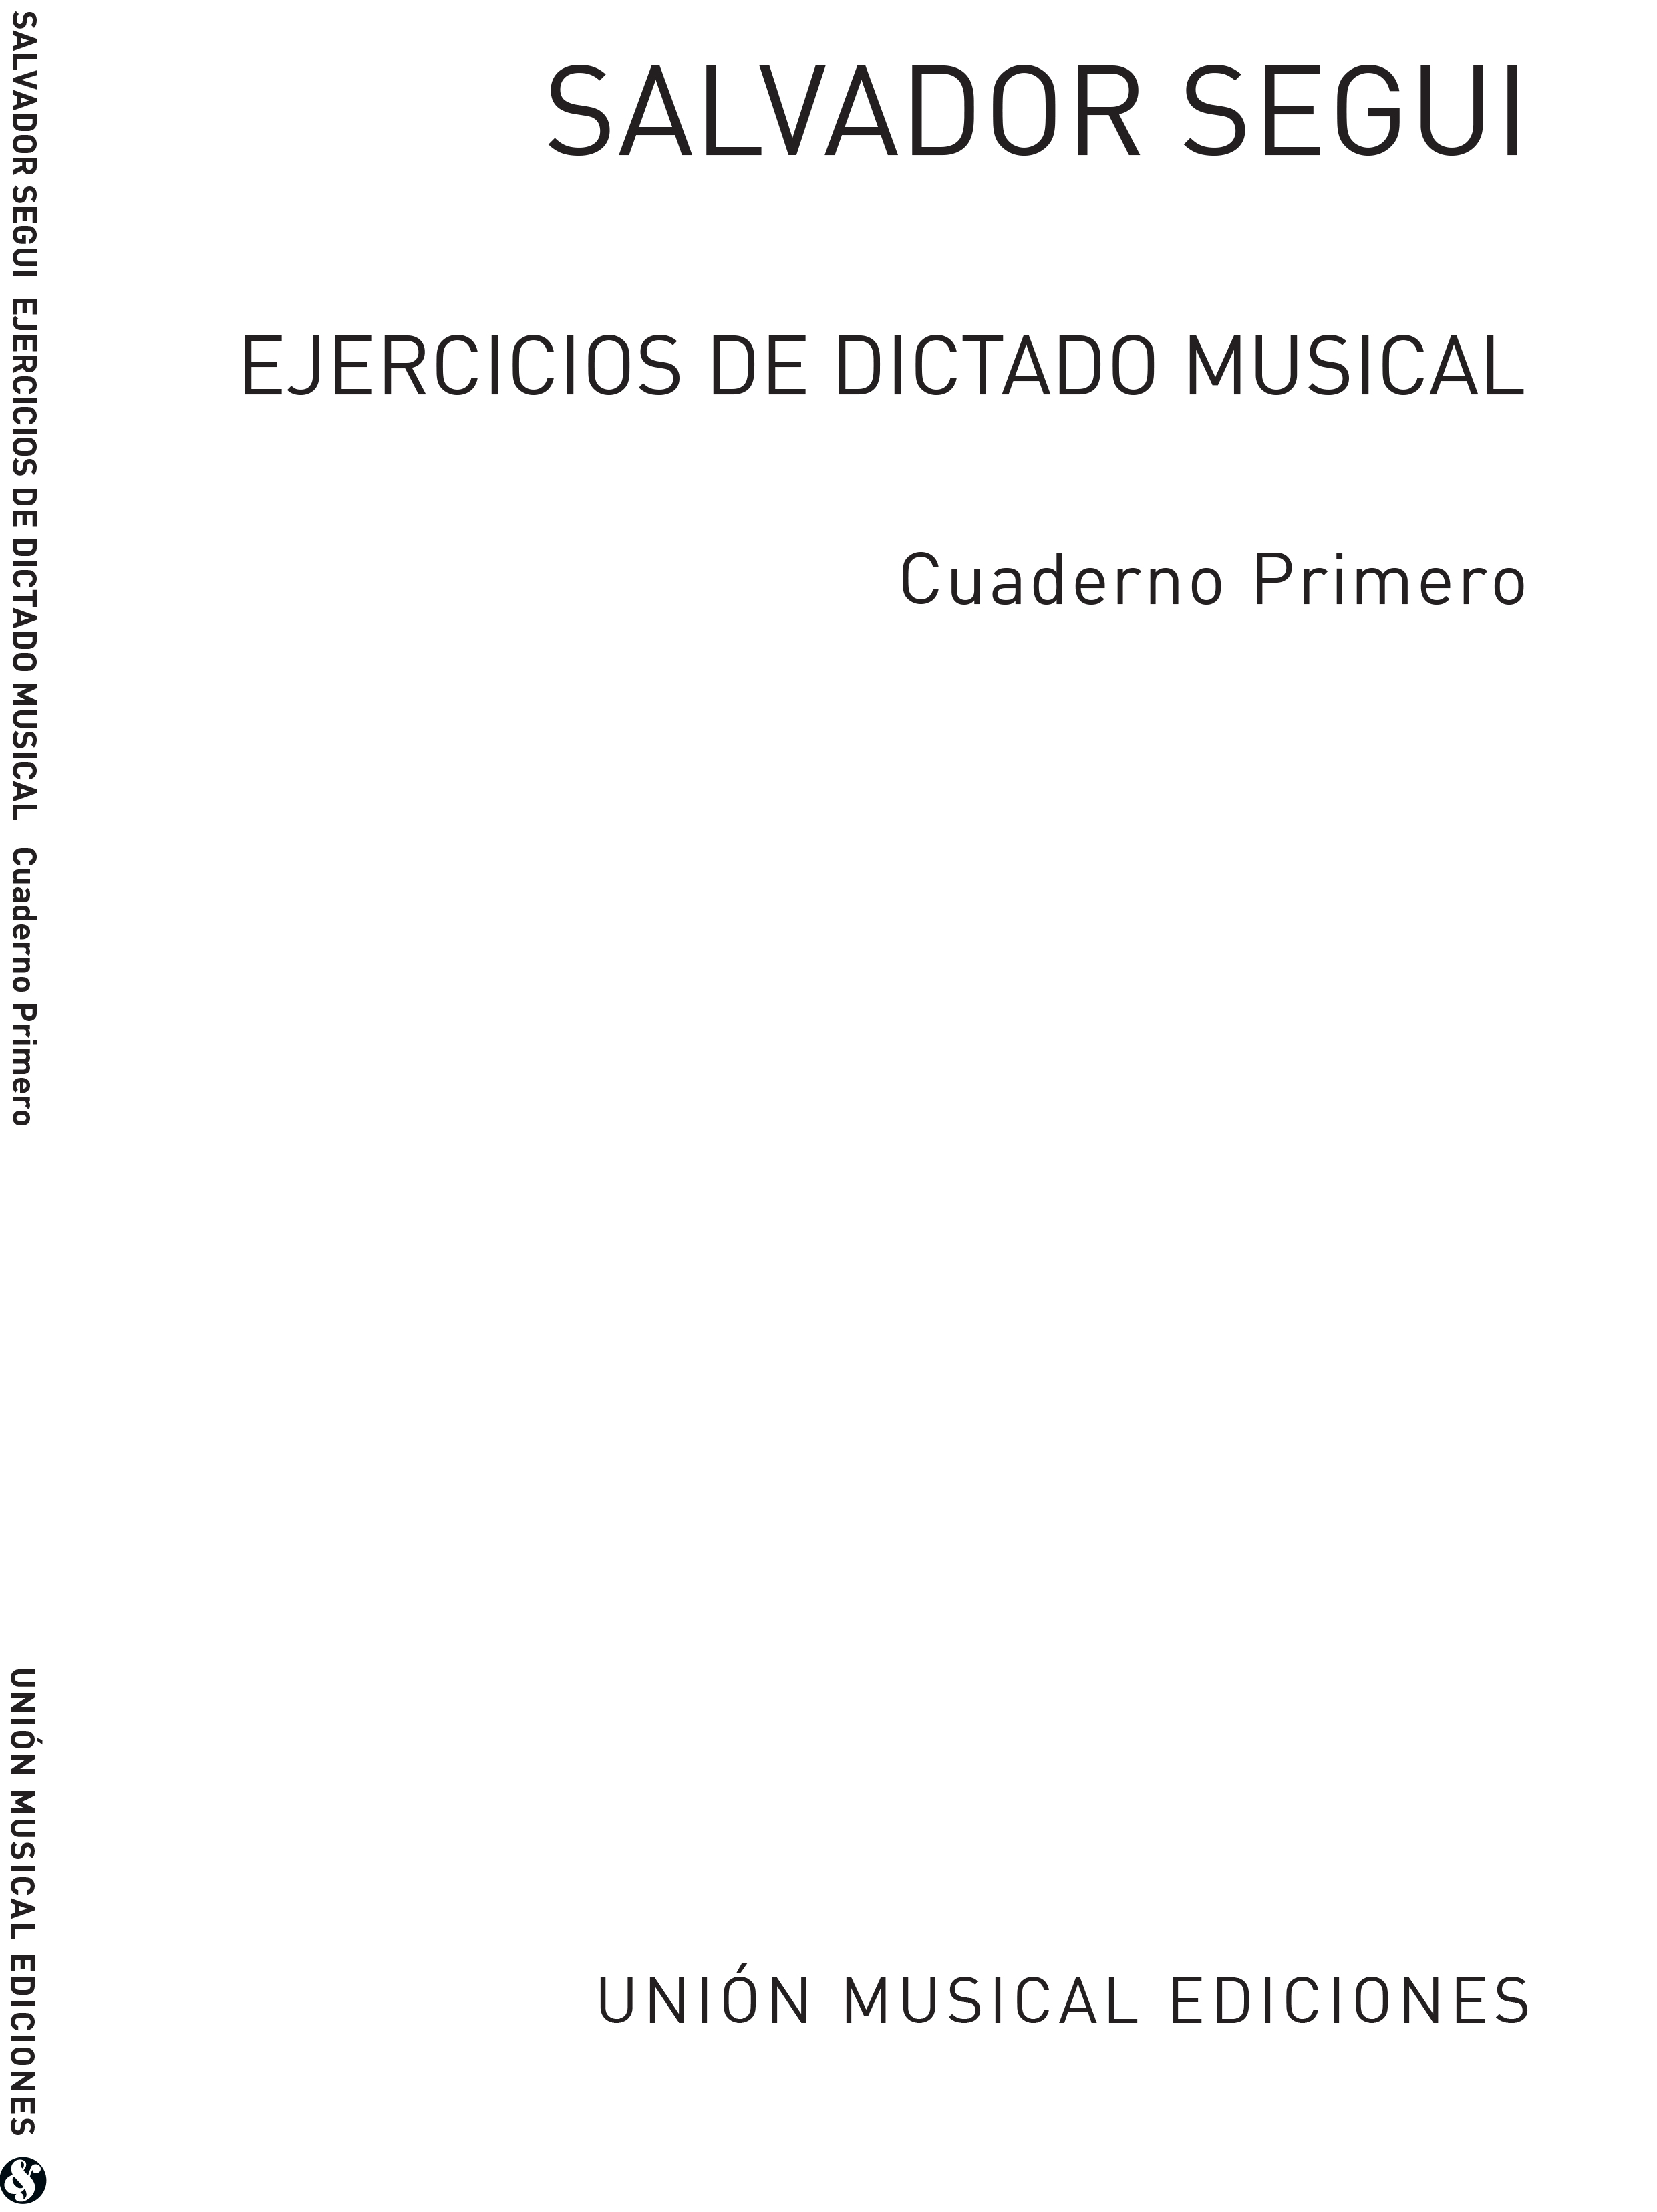 Salvador Segui: Ejercicios De Dictado Musical I